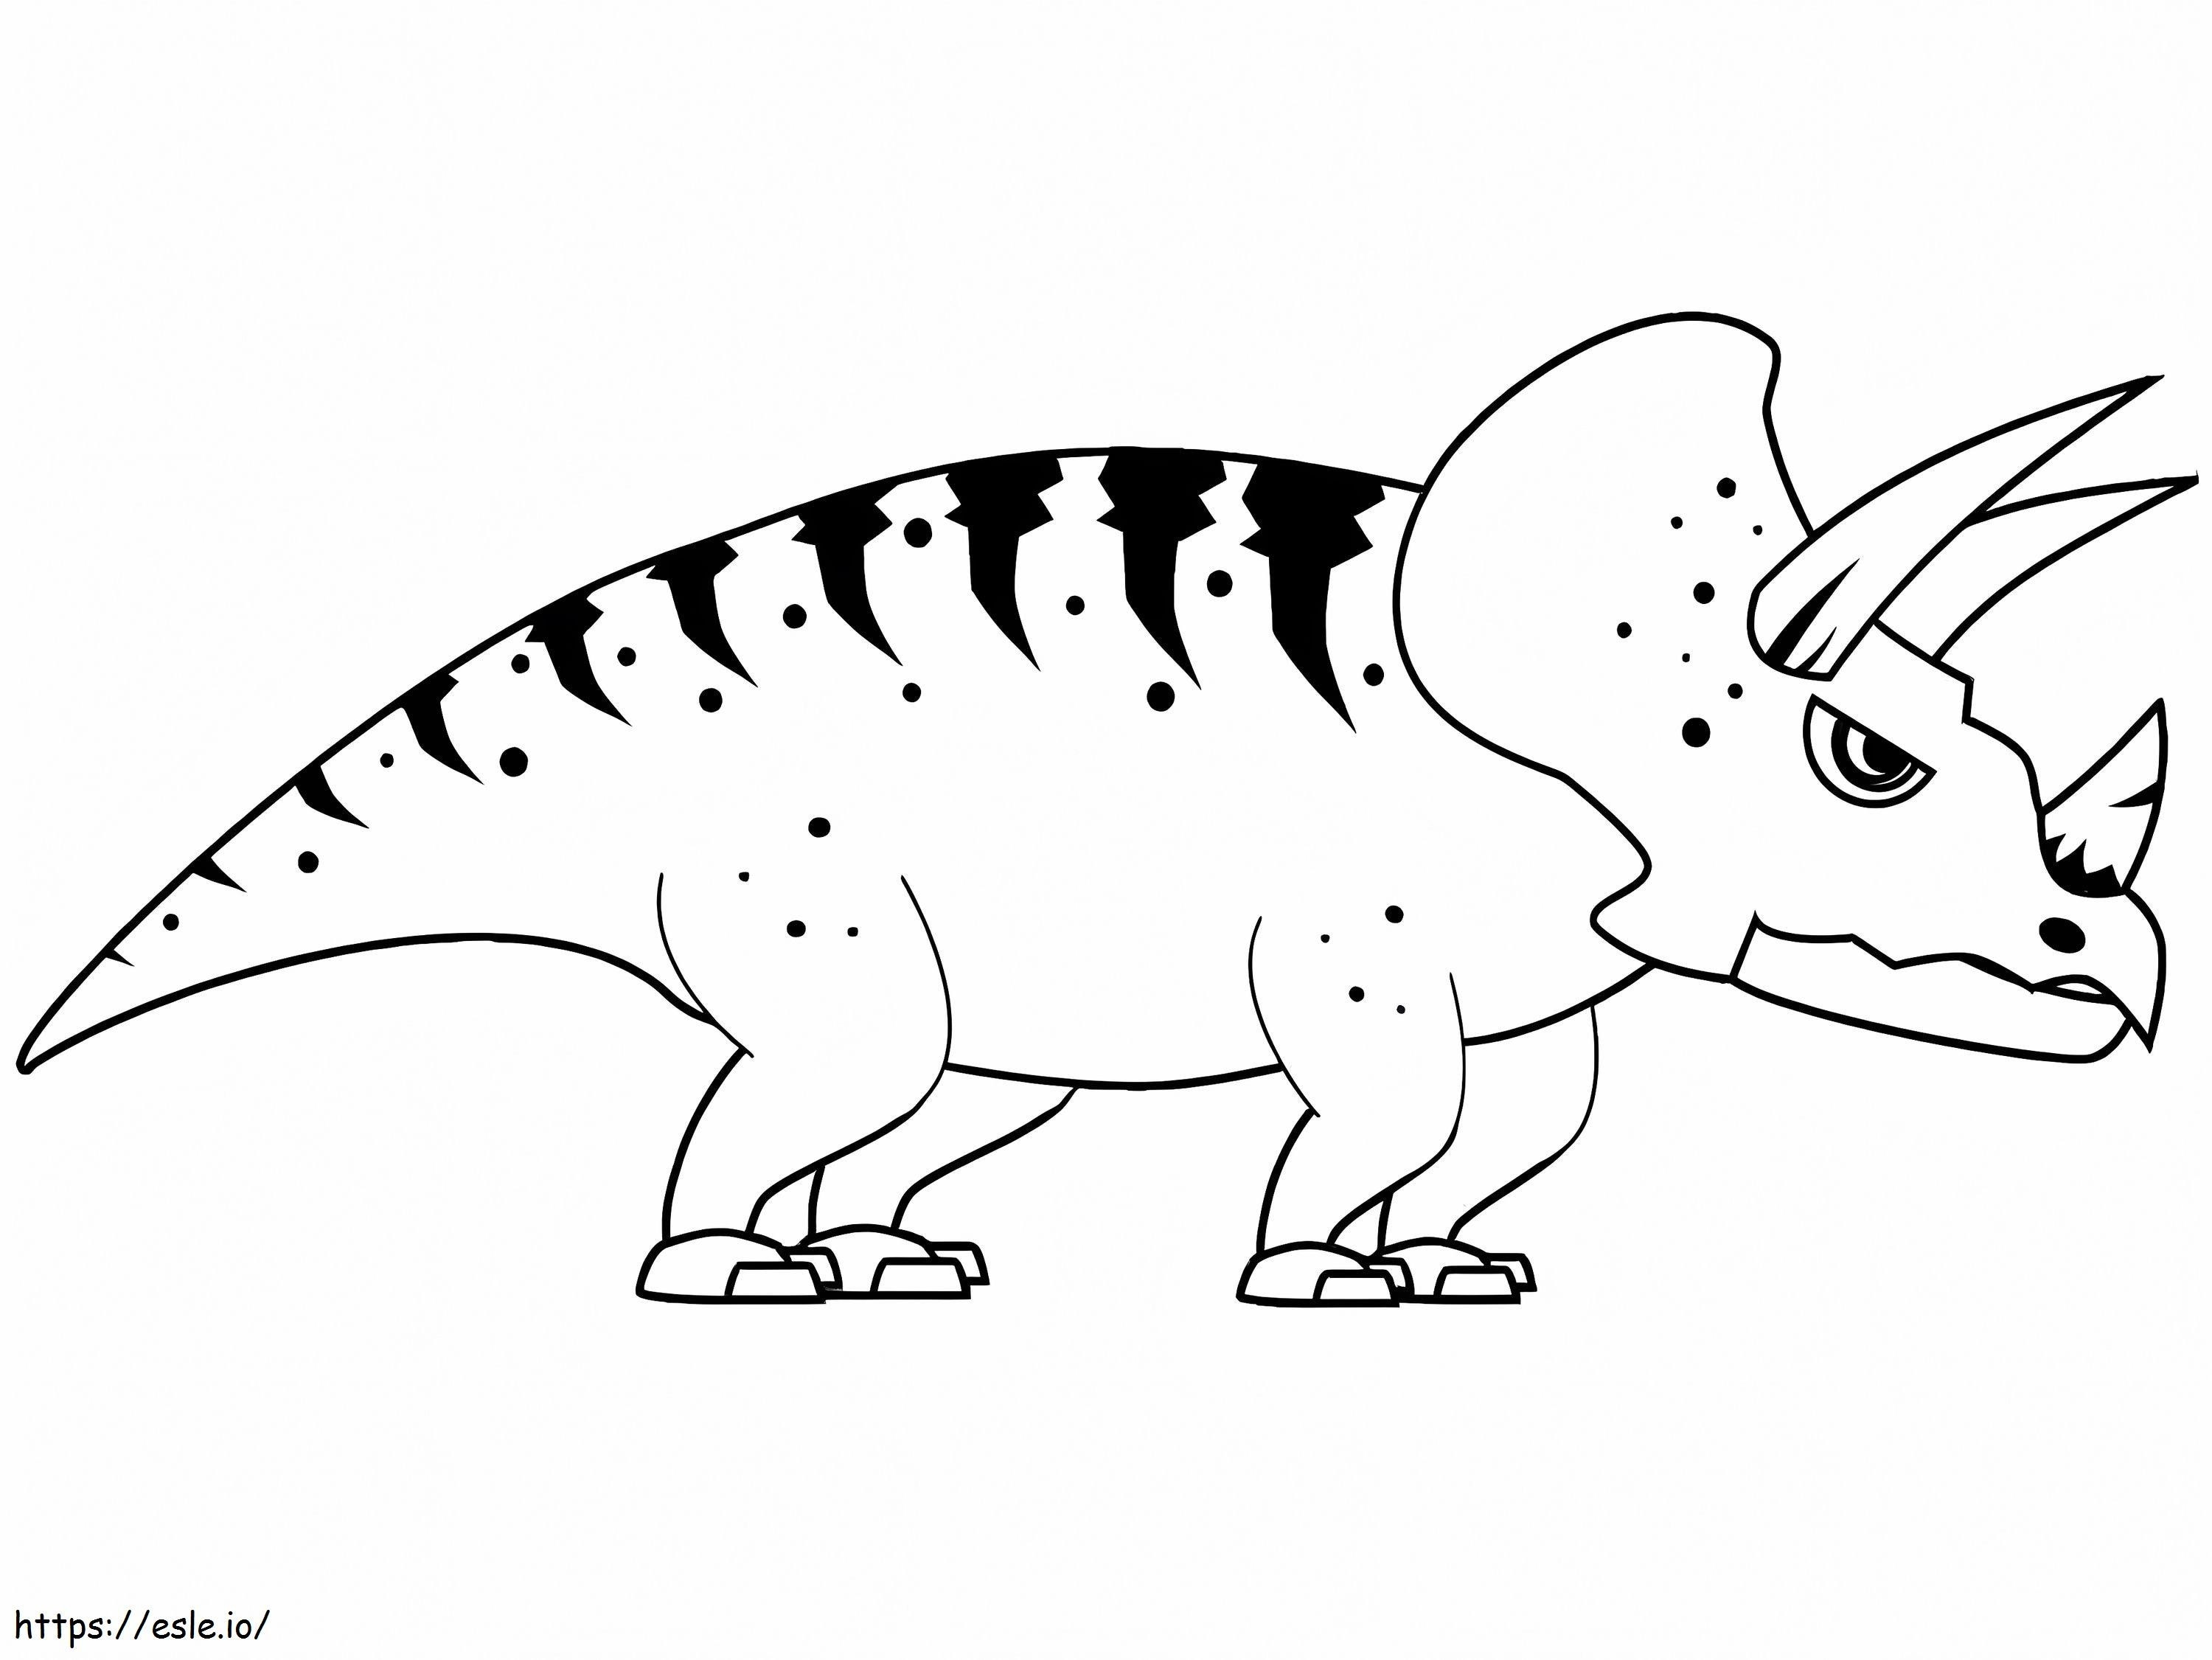 Immagini gratuite di Triceratopo da colorare